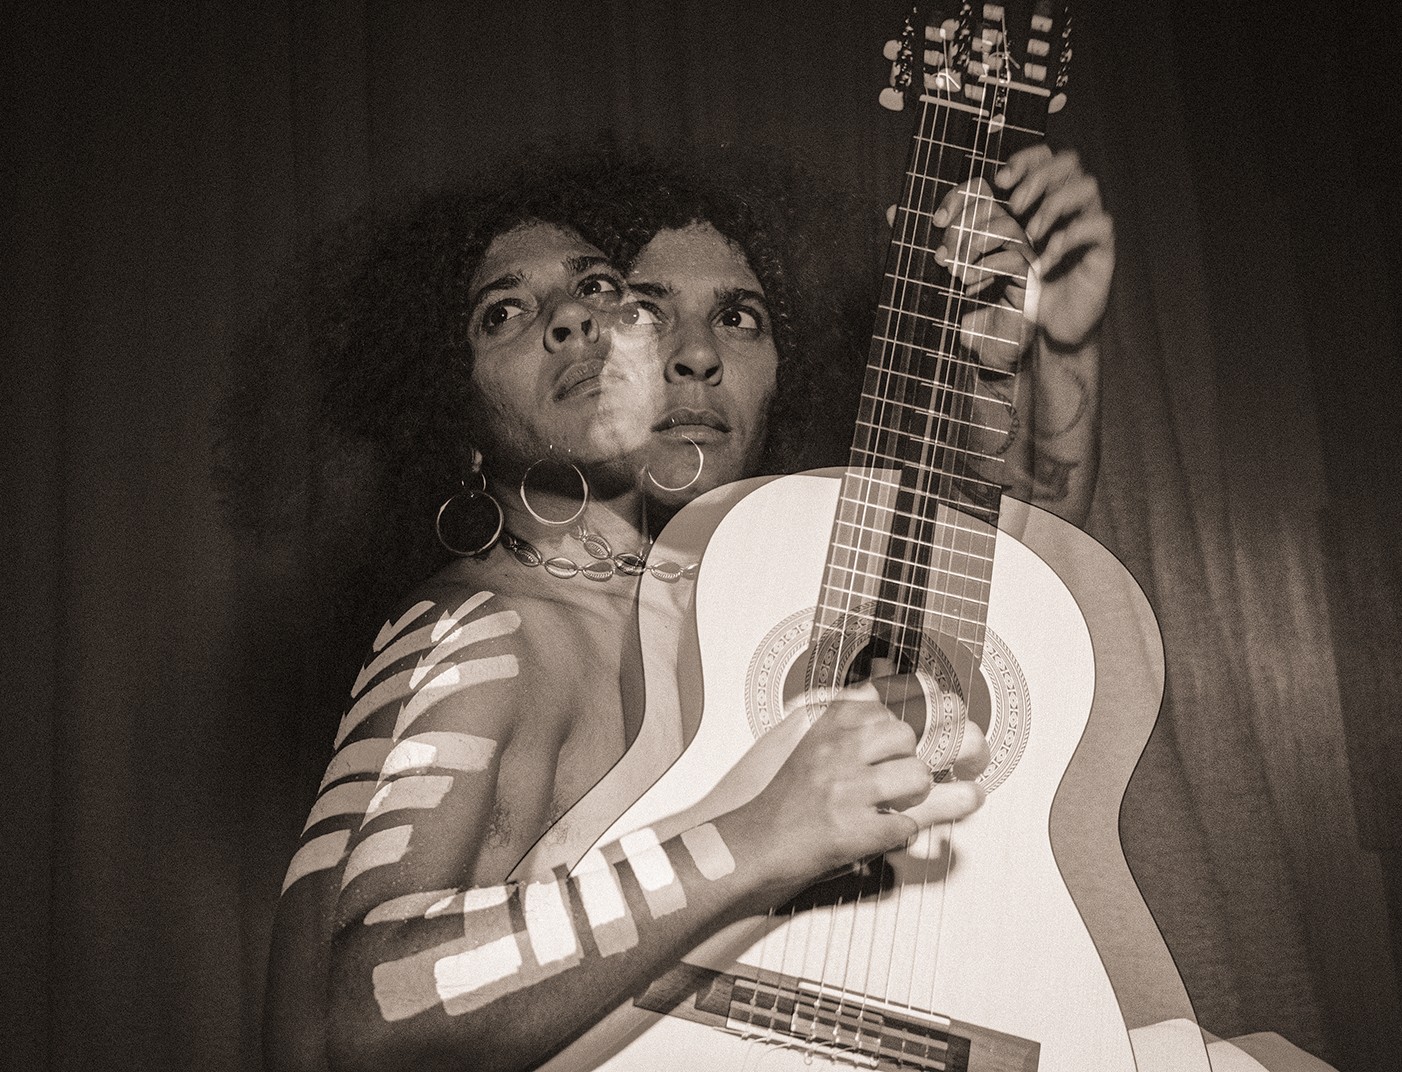 Josyara realça e expande sentidos do repertório da Timbalada com voz e violão no EP 'Mandinga multiplicação'